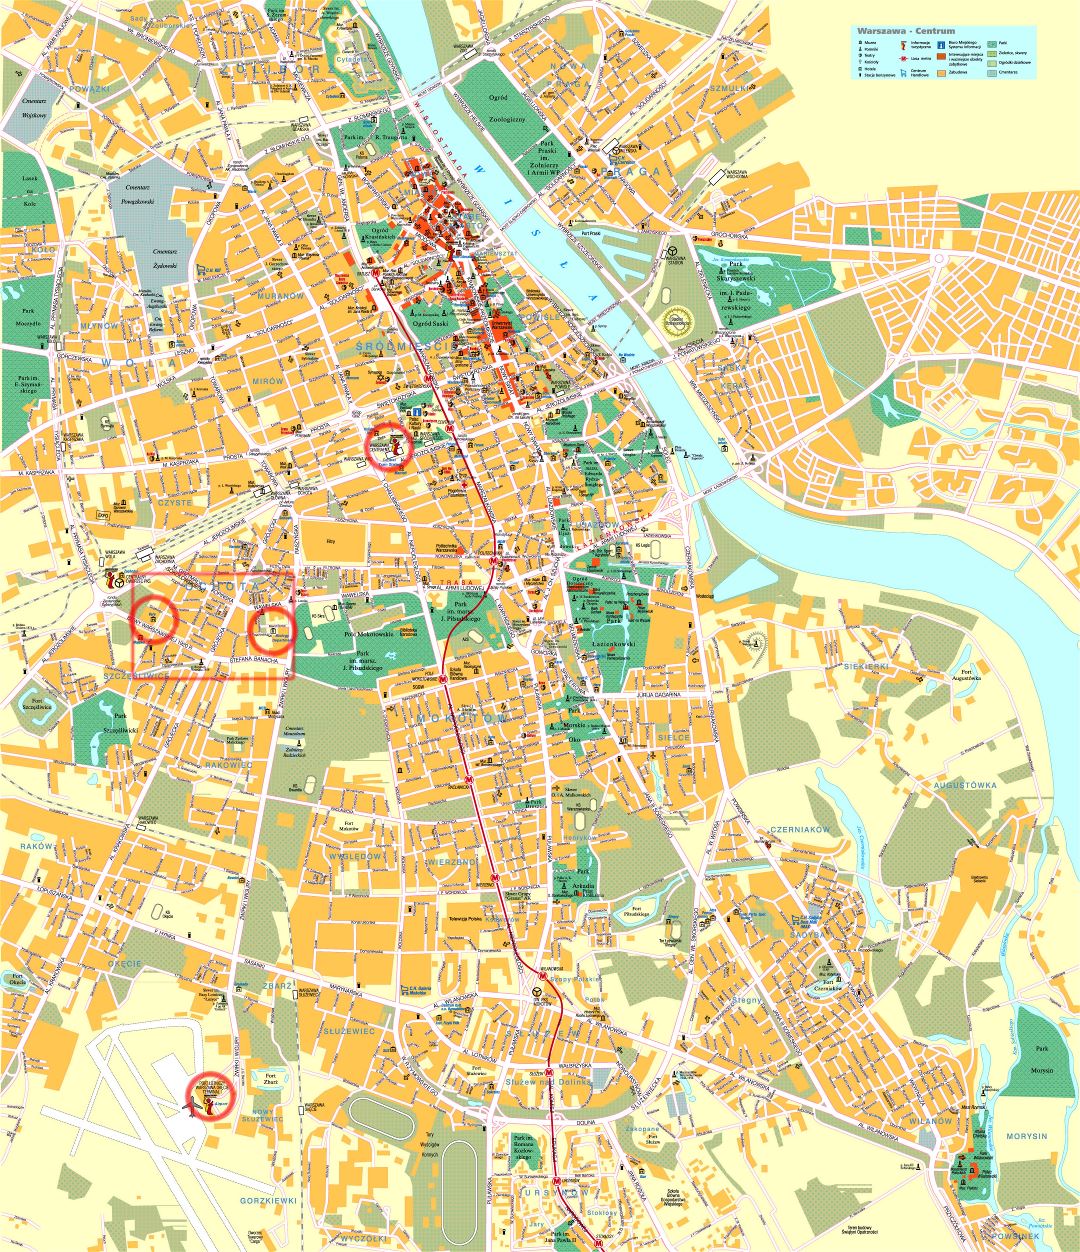 Grande detallado carretera y turístico mapa del centro de la ciudad de Varsovia con edificios